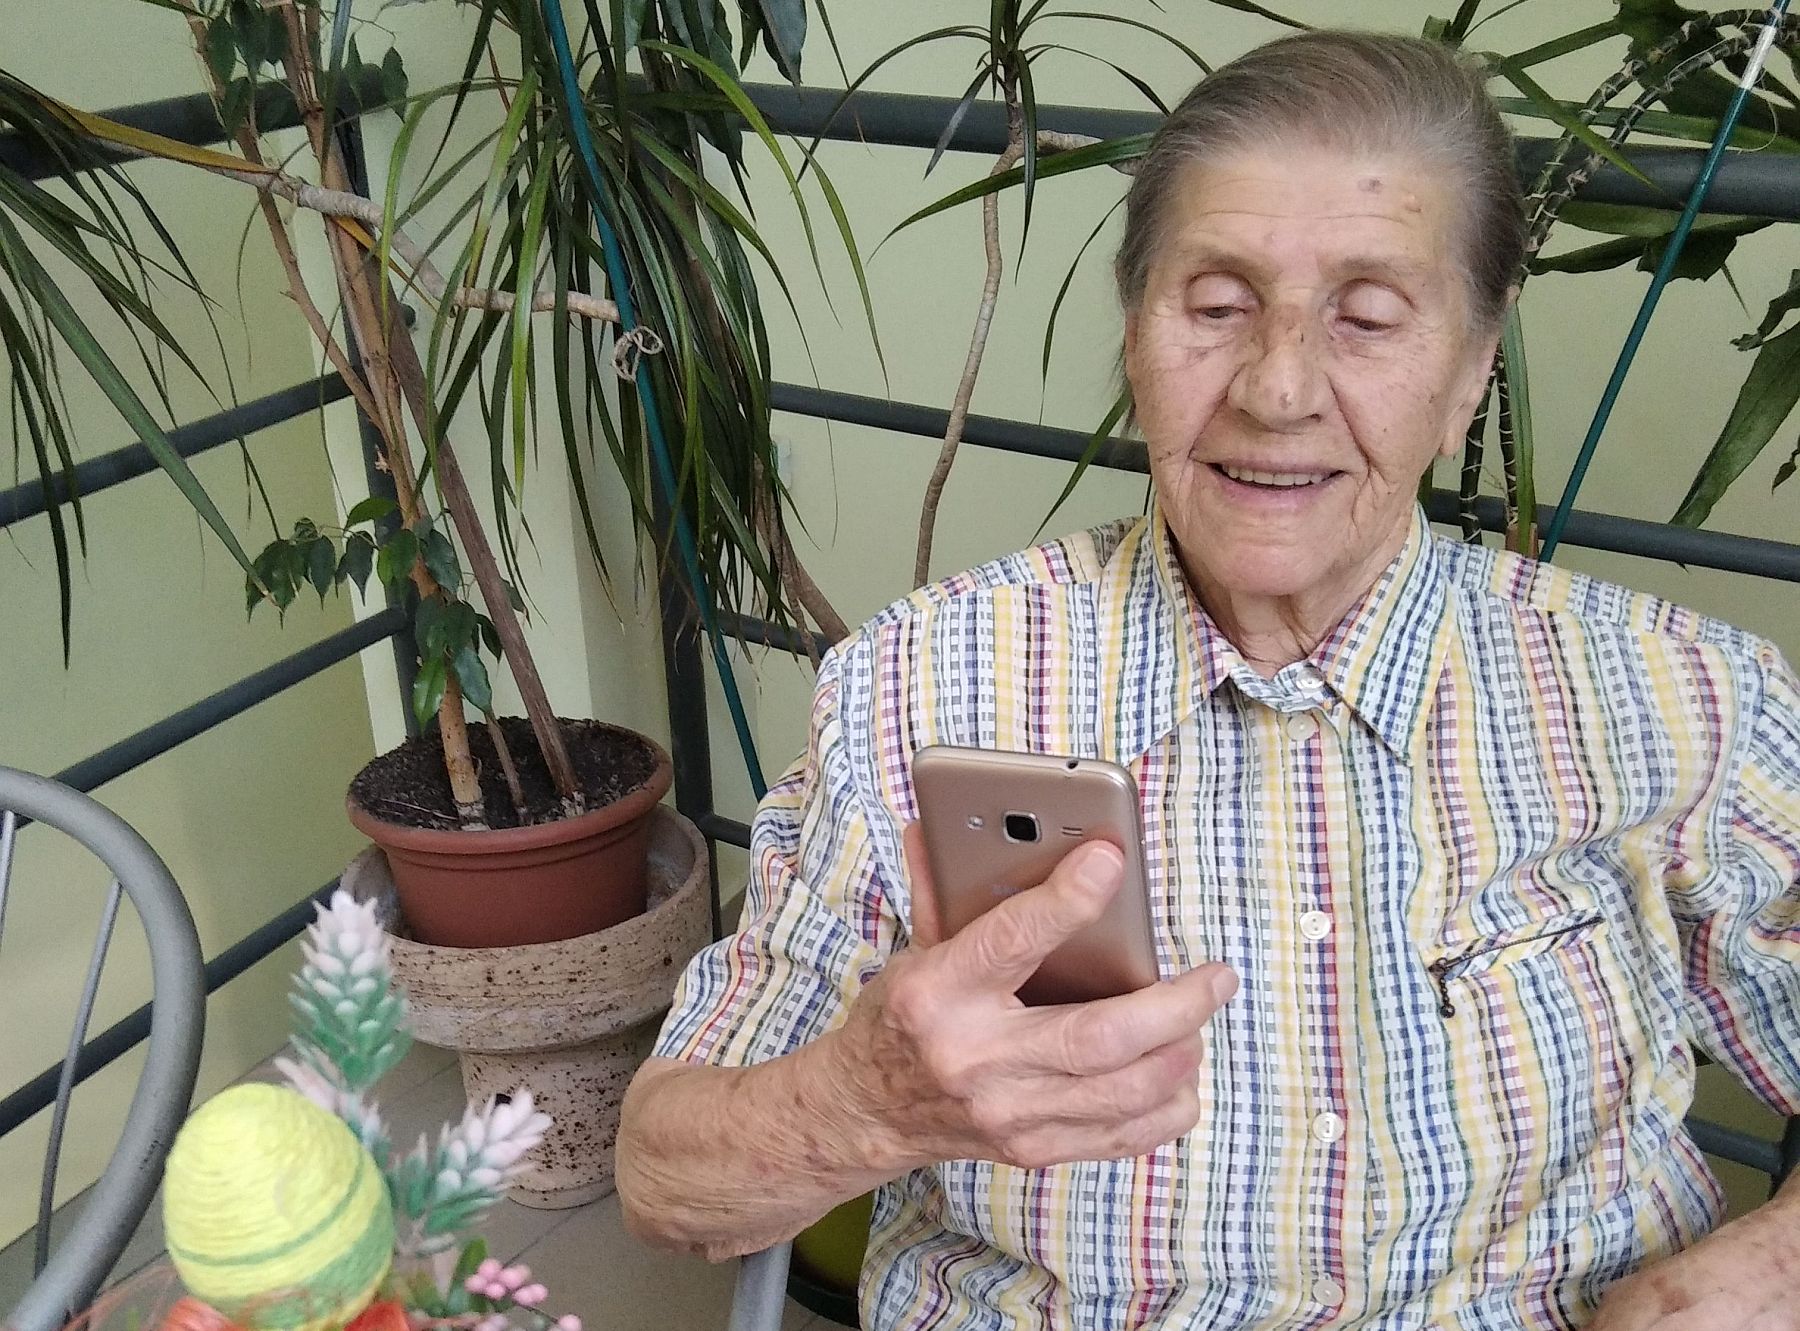 Sikeresen működik a videotelefonos kapcsolattartás a fehérvári idősotthonokban